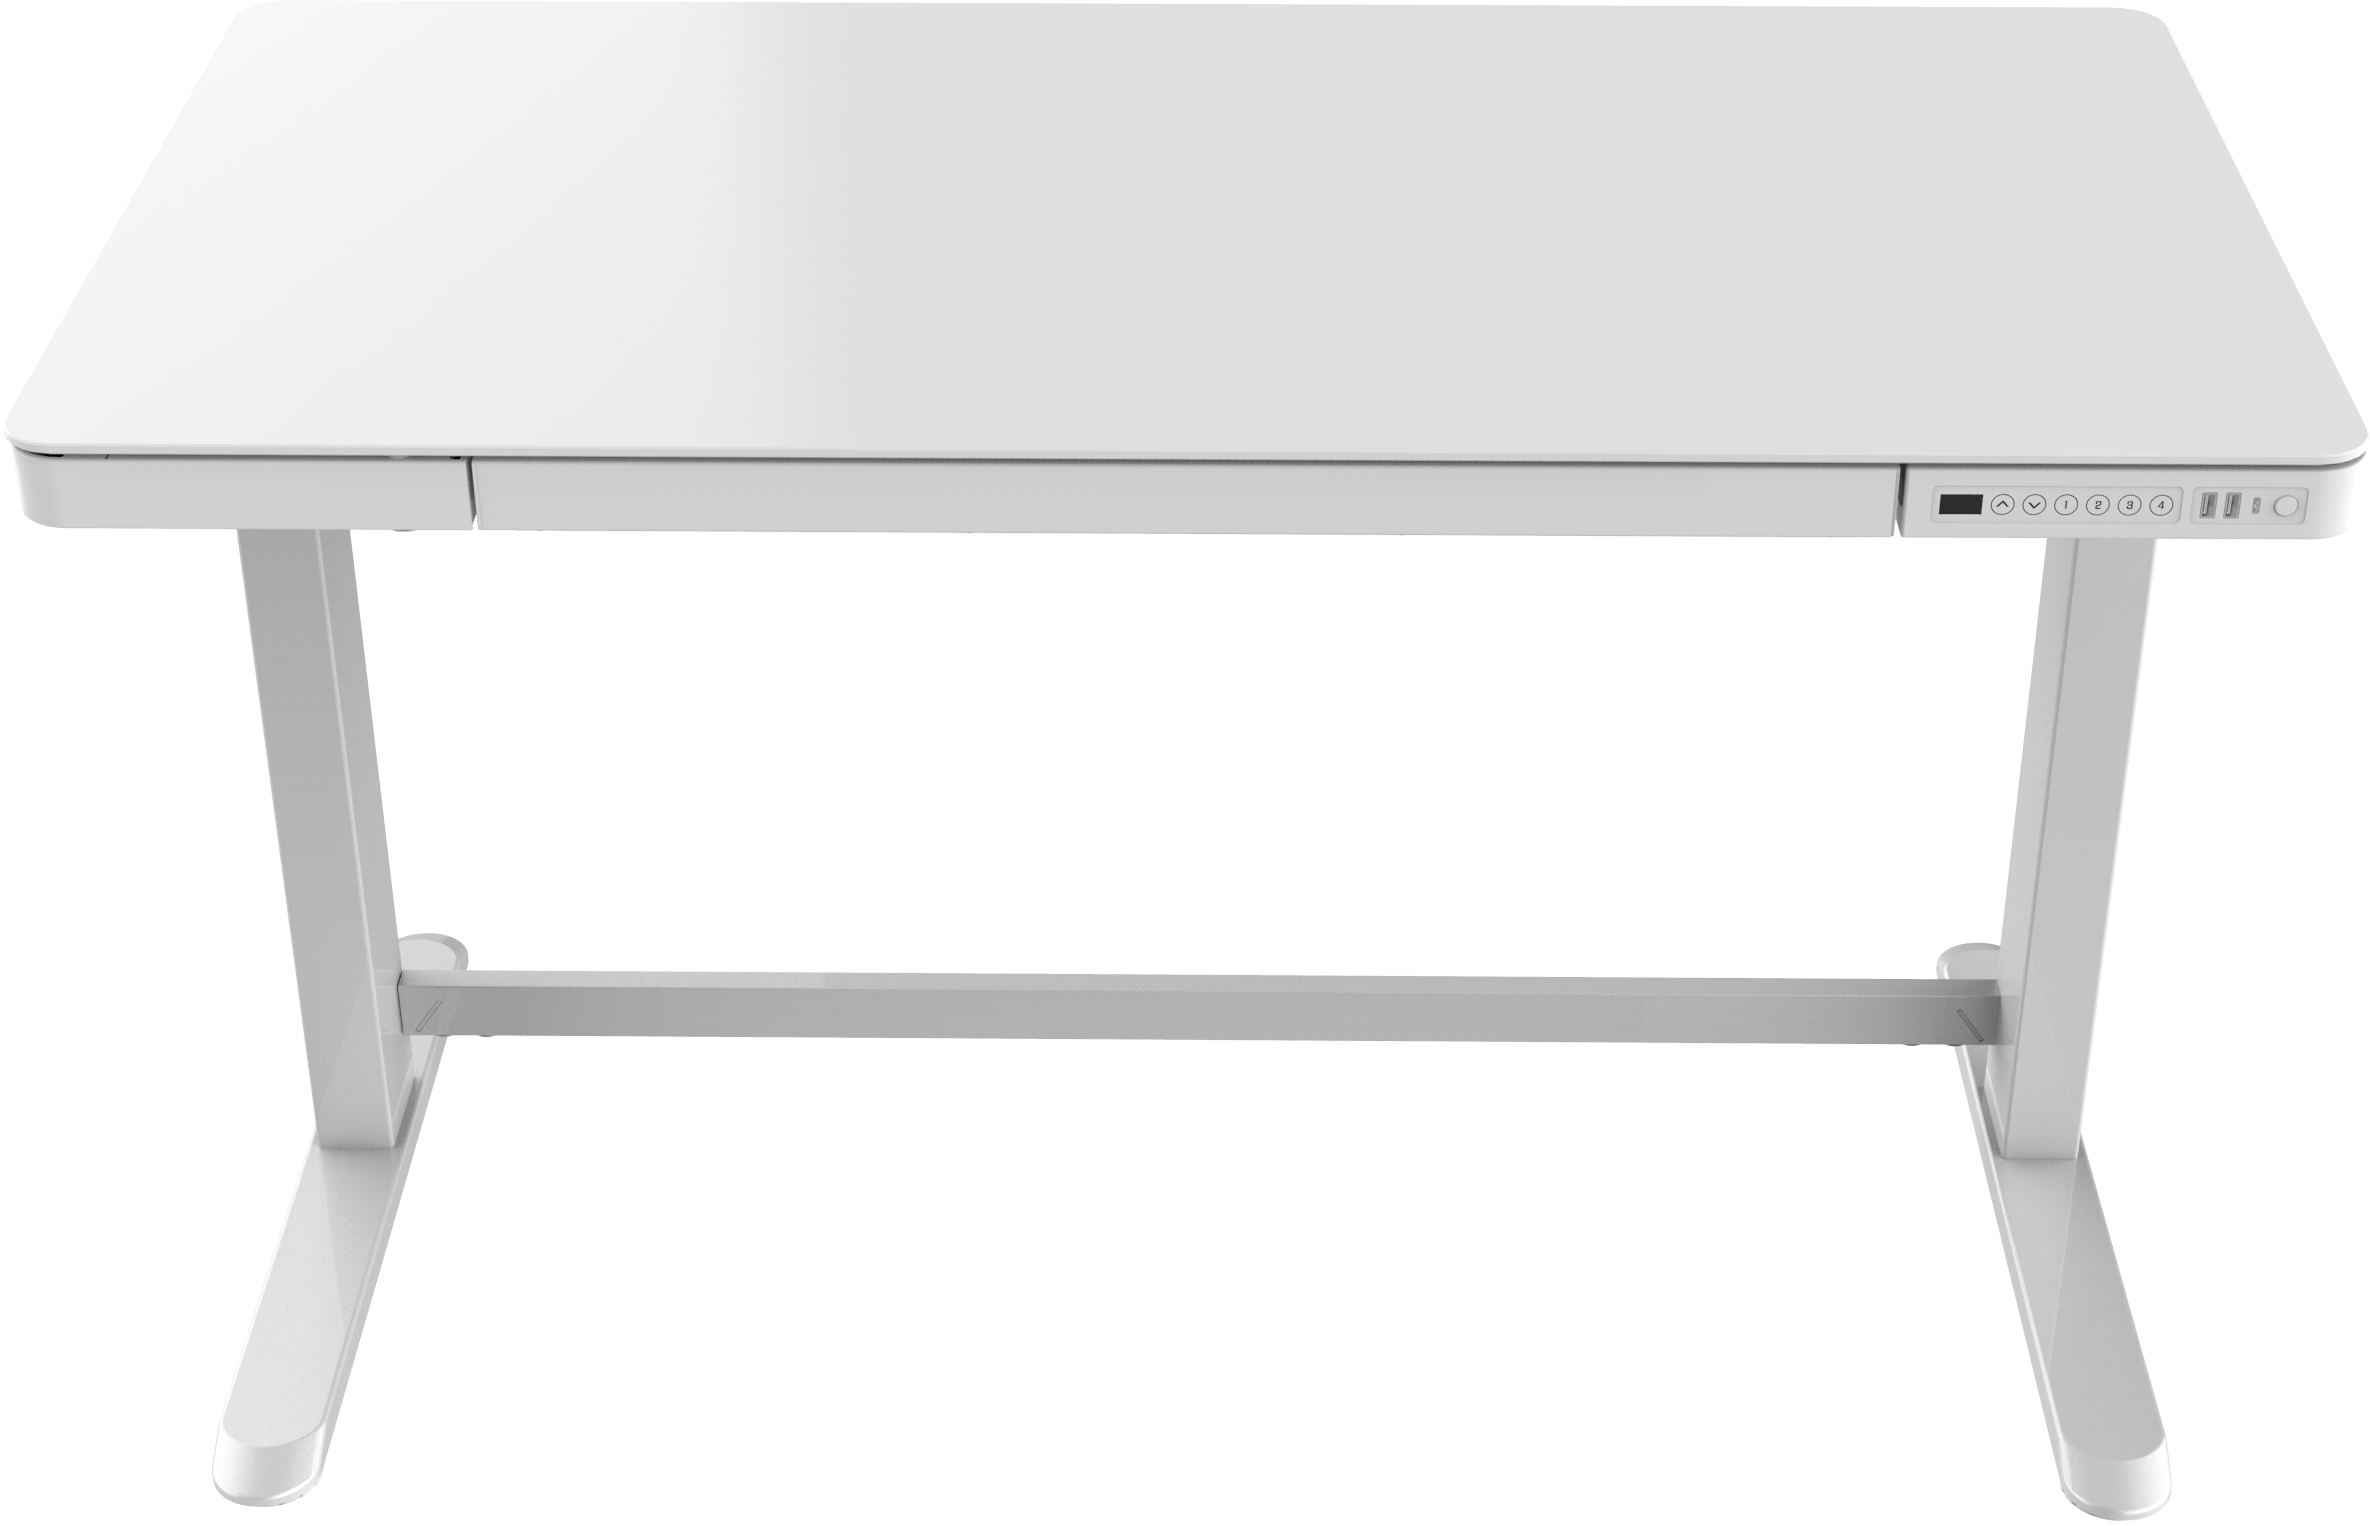 Euroseats elektrische zit/sta werkplek. Uitvoering 120 bij 60 cm. Uitvoering wit frame en wit gehard glazen topblad